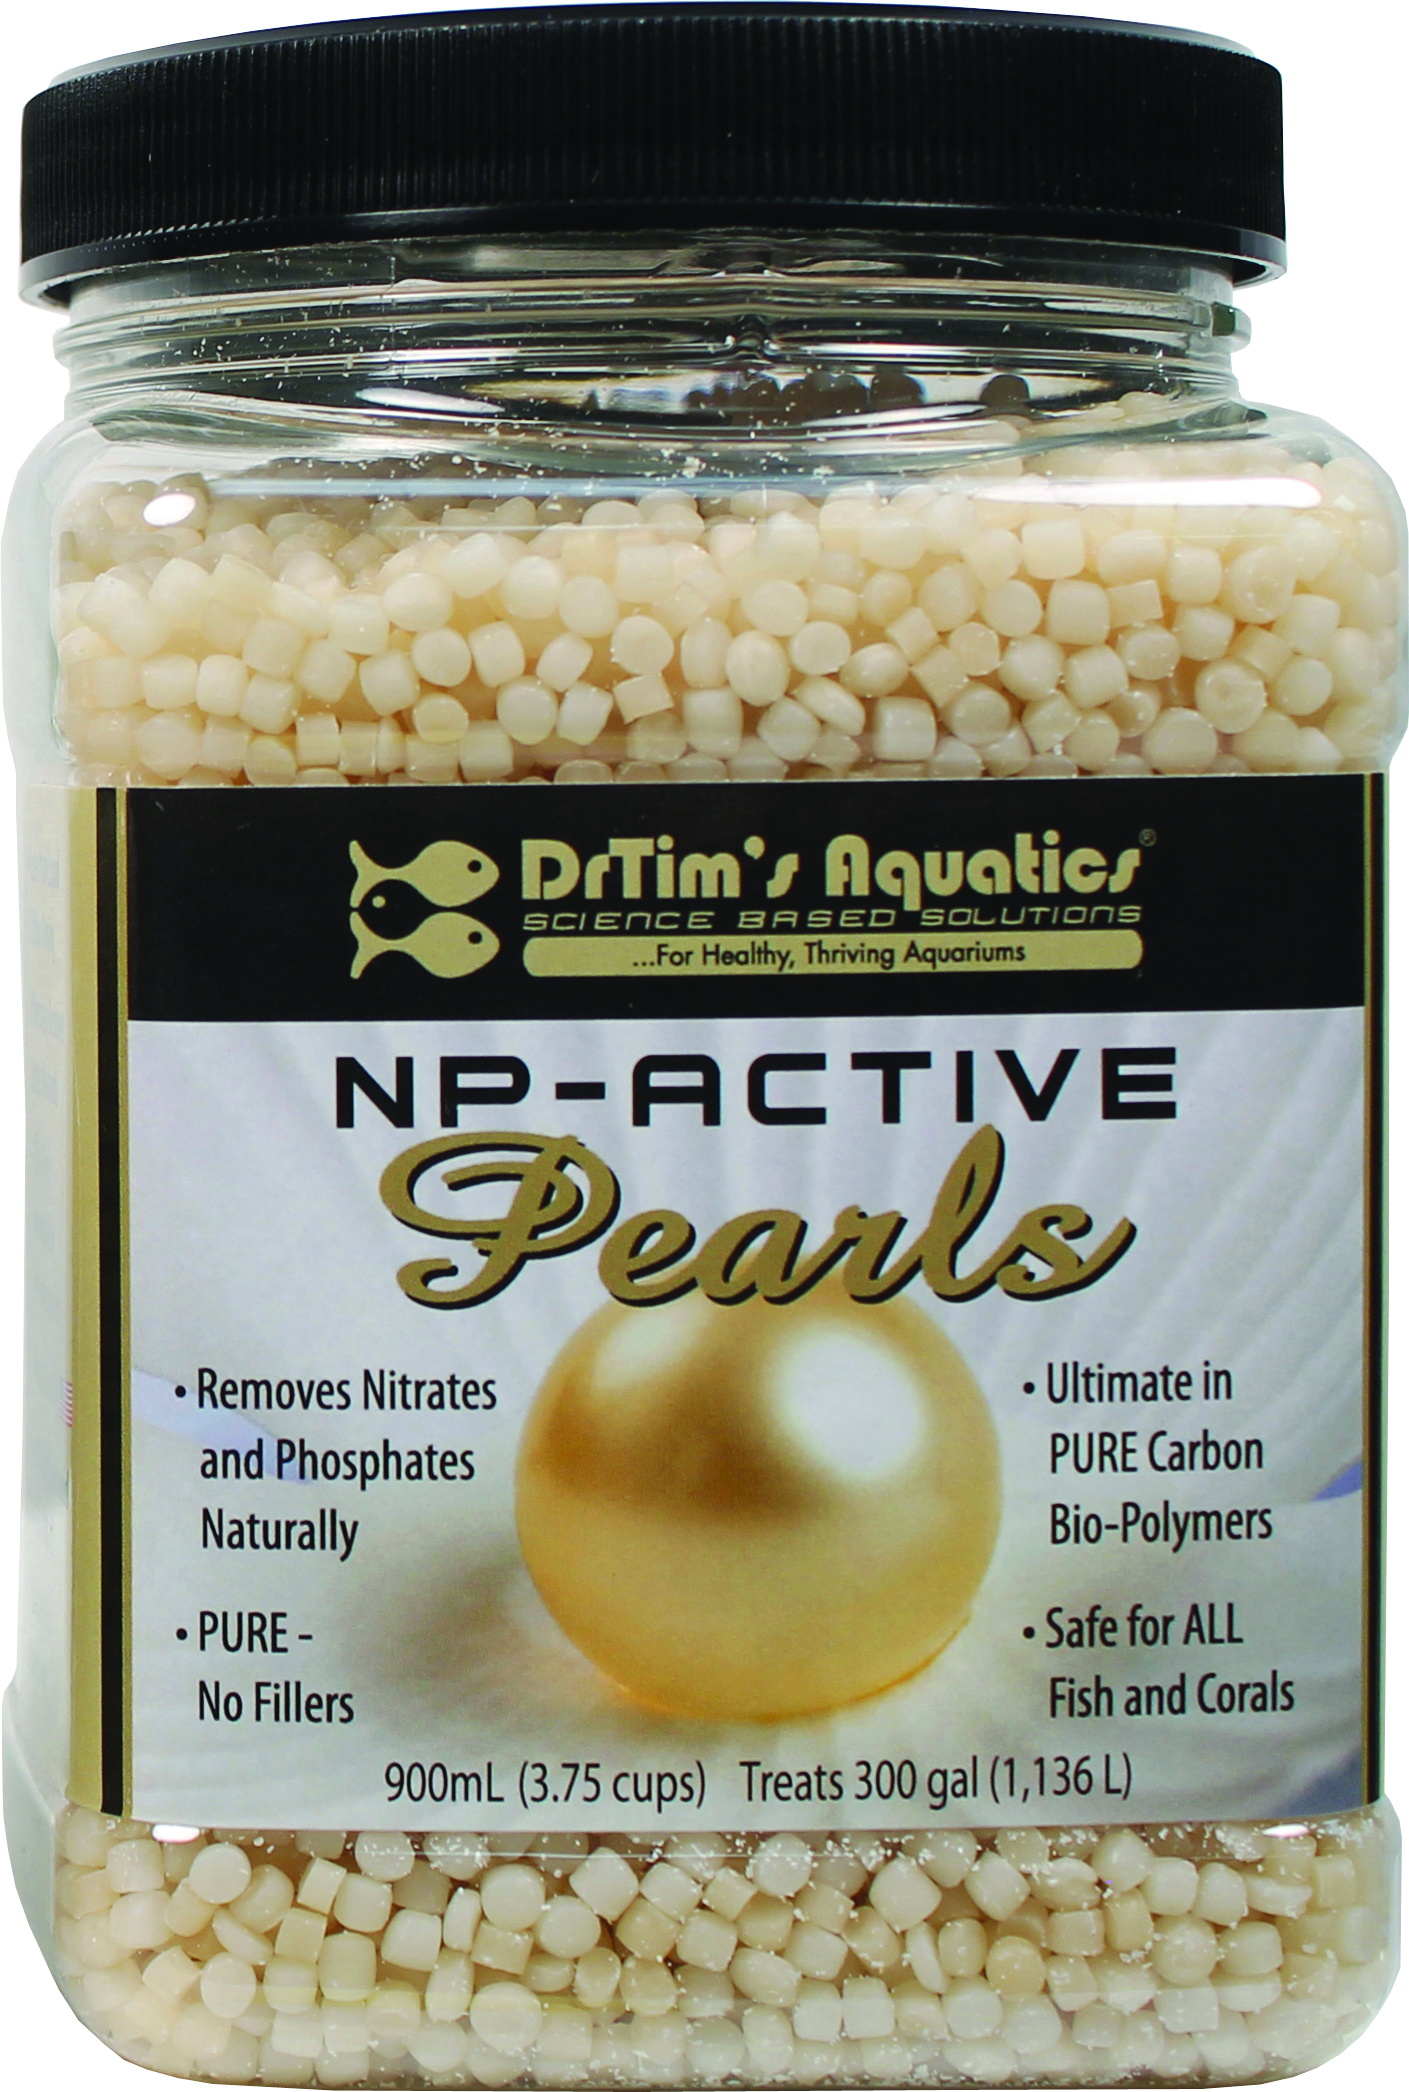 NP-ACTIVE PEARLS AQUARIUM TREATMENT